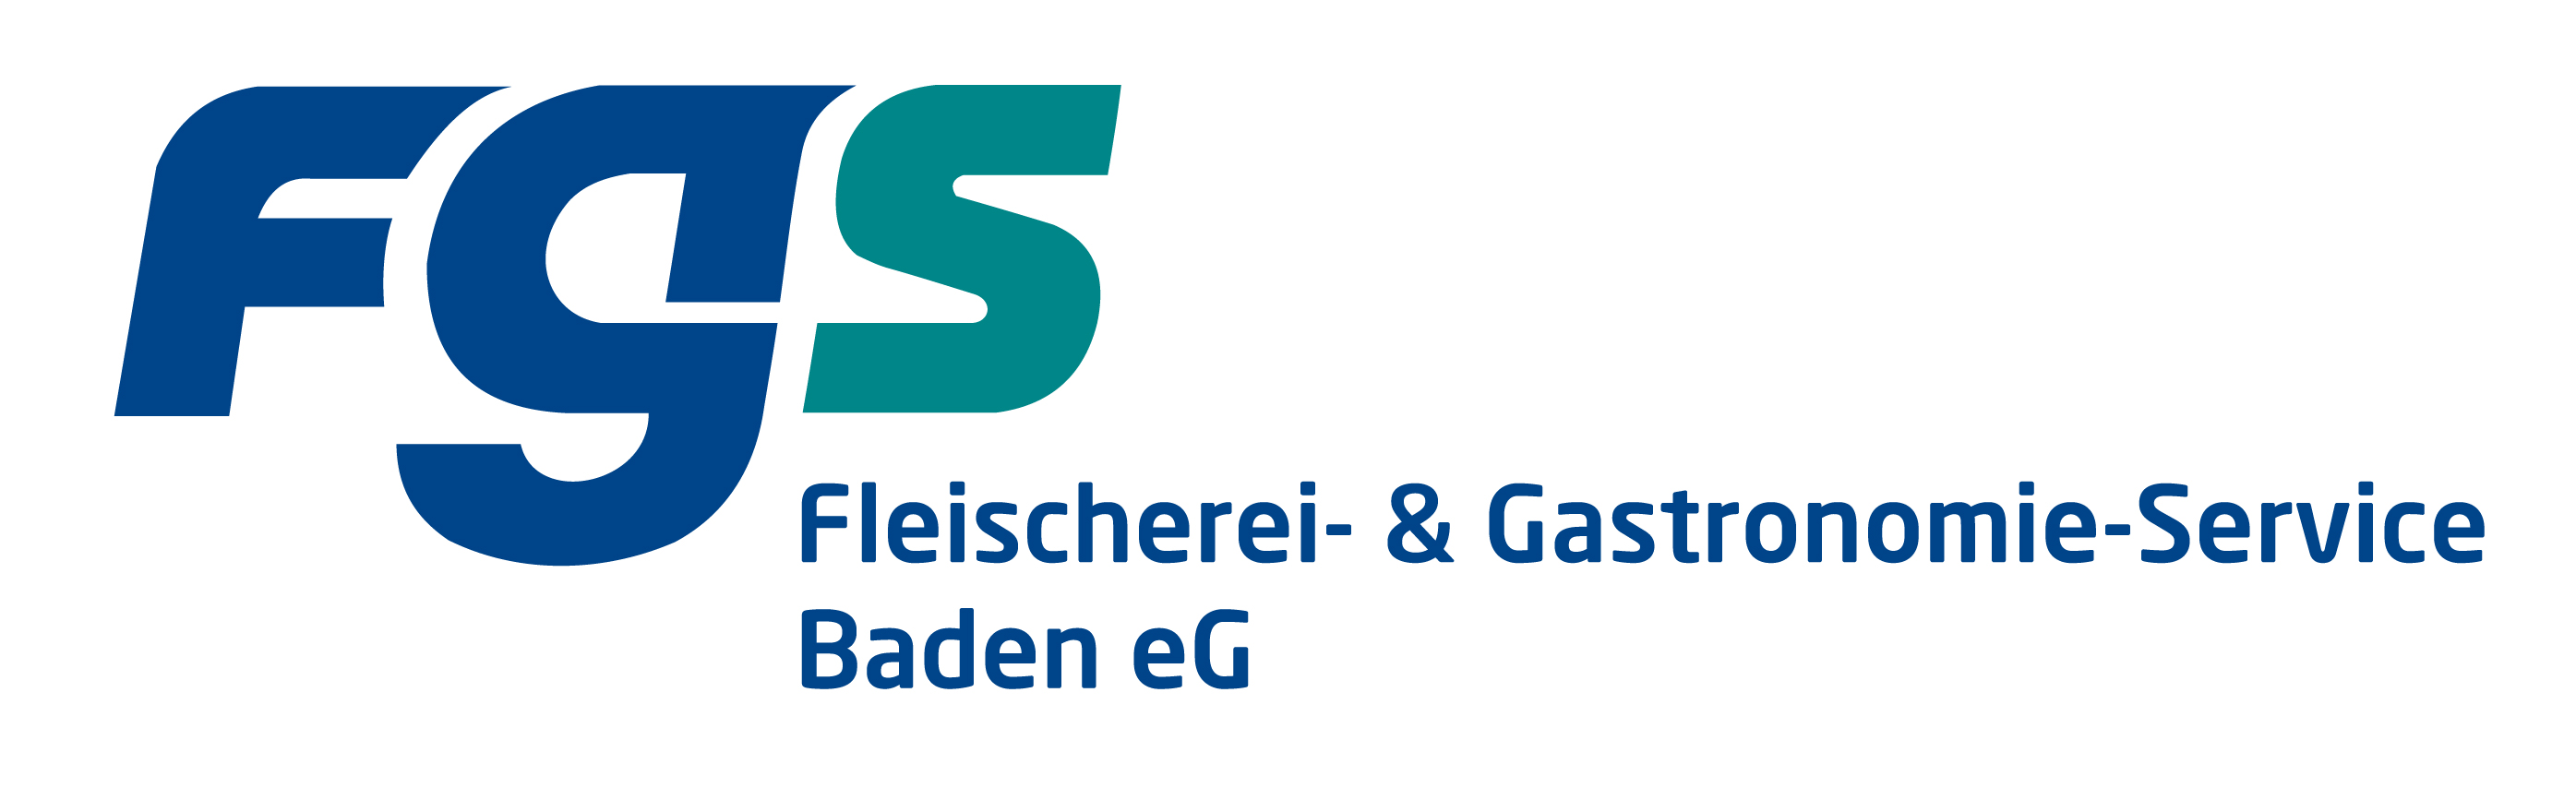 FGS logo_fgs_baden